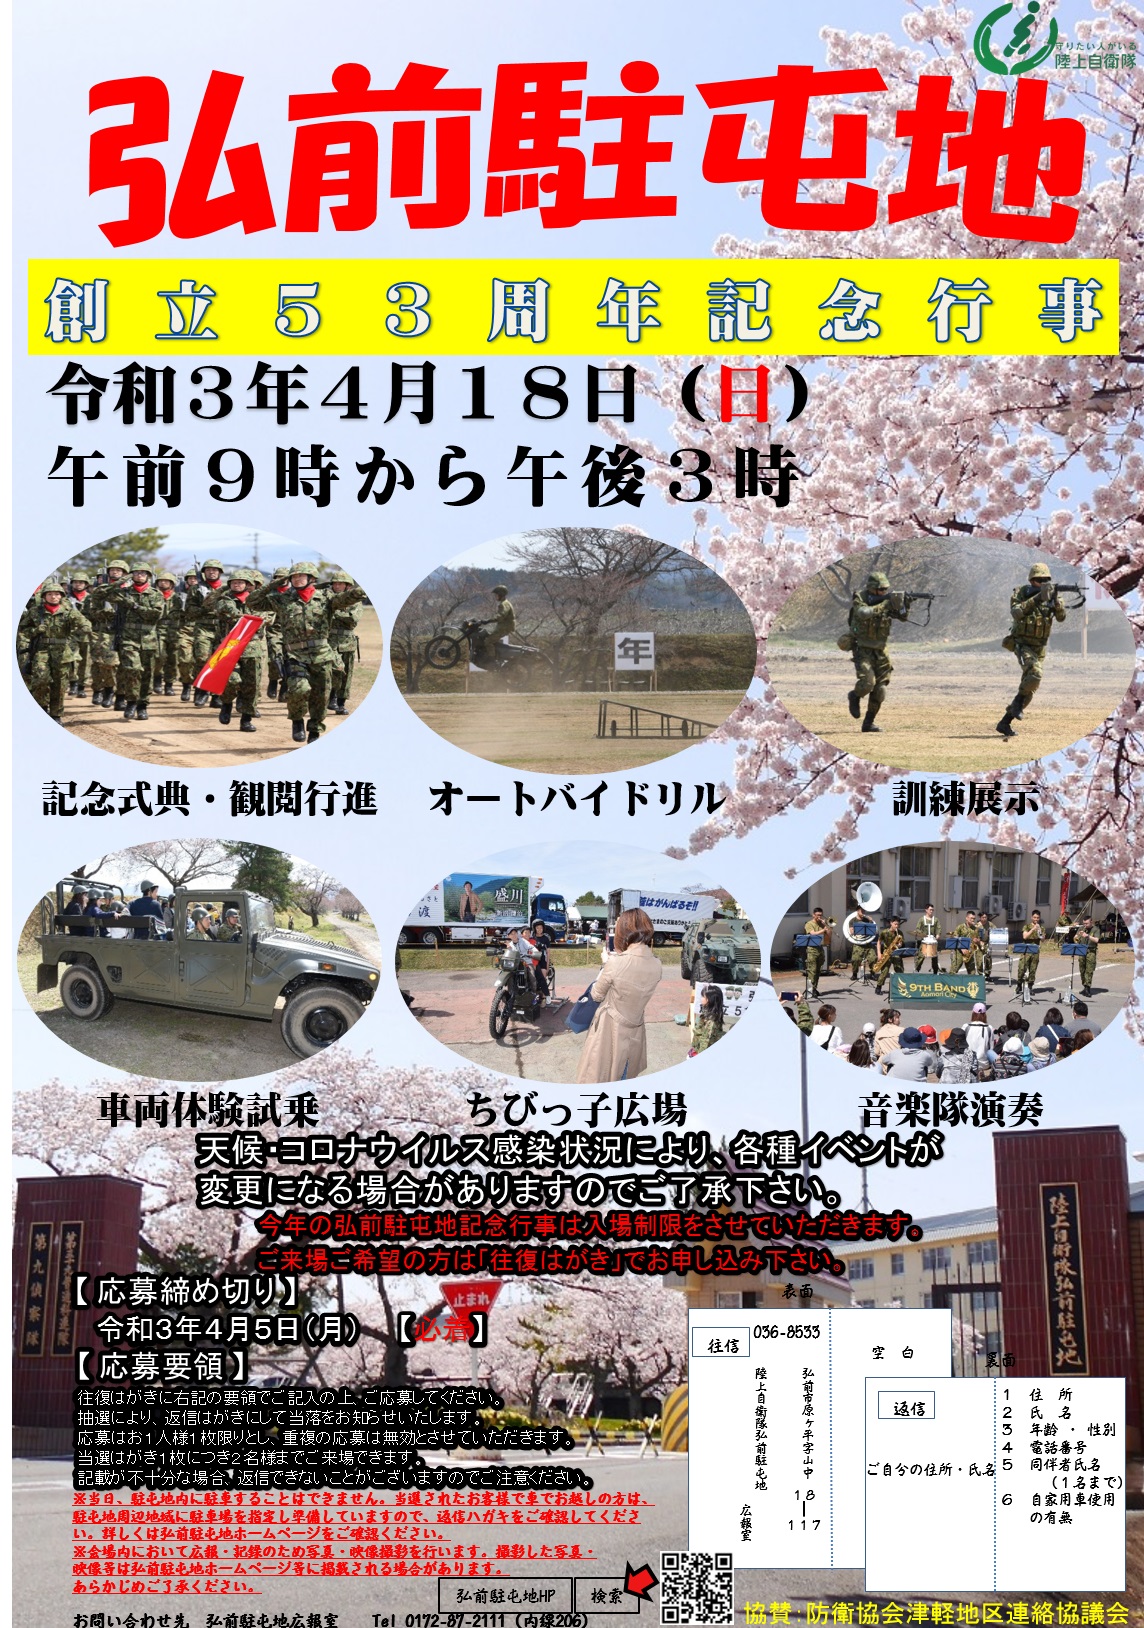 弘前駐屯地 創立53周年記念日行事ポスター